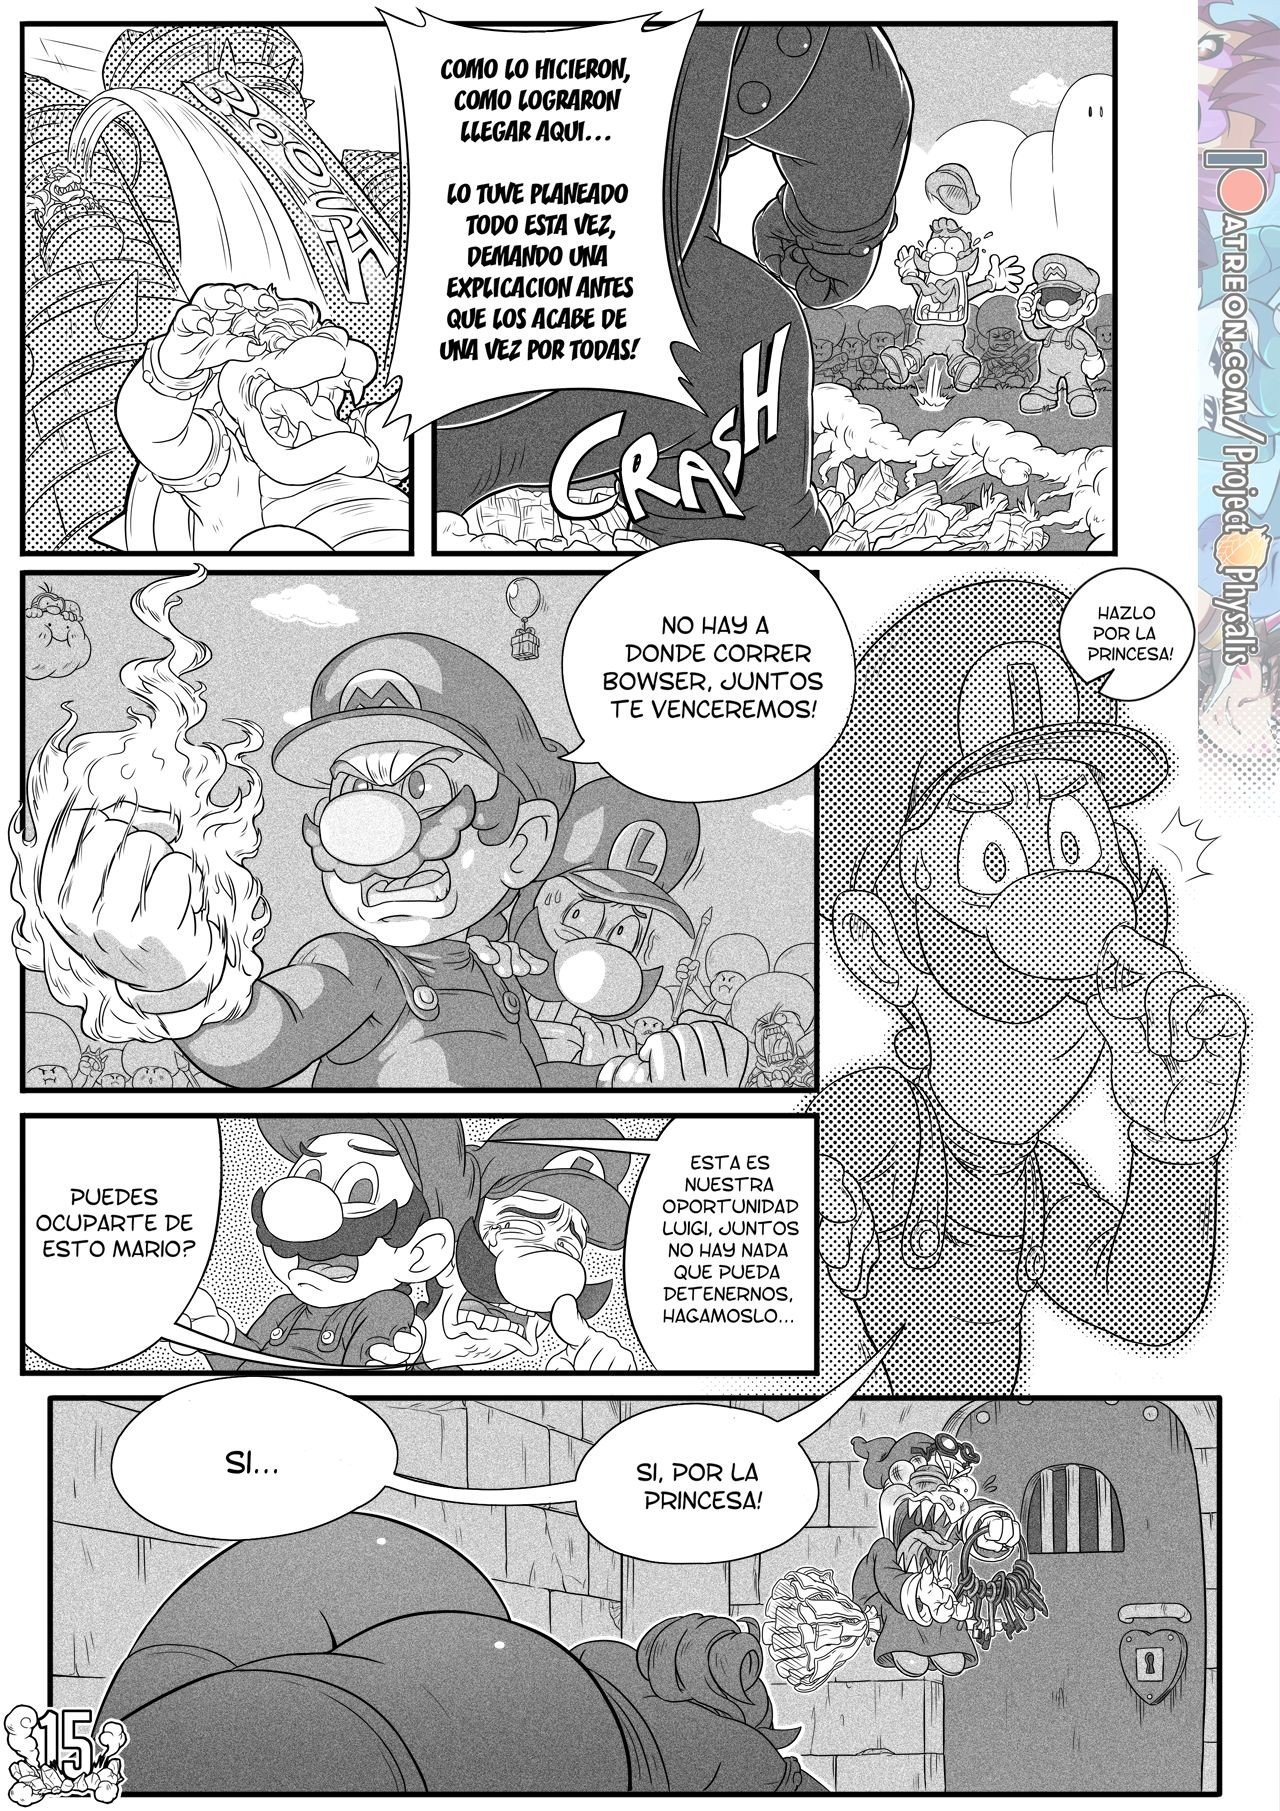 Conquistando a la princesa (Super Mario Bros) - LeRoach - 15